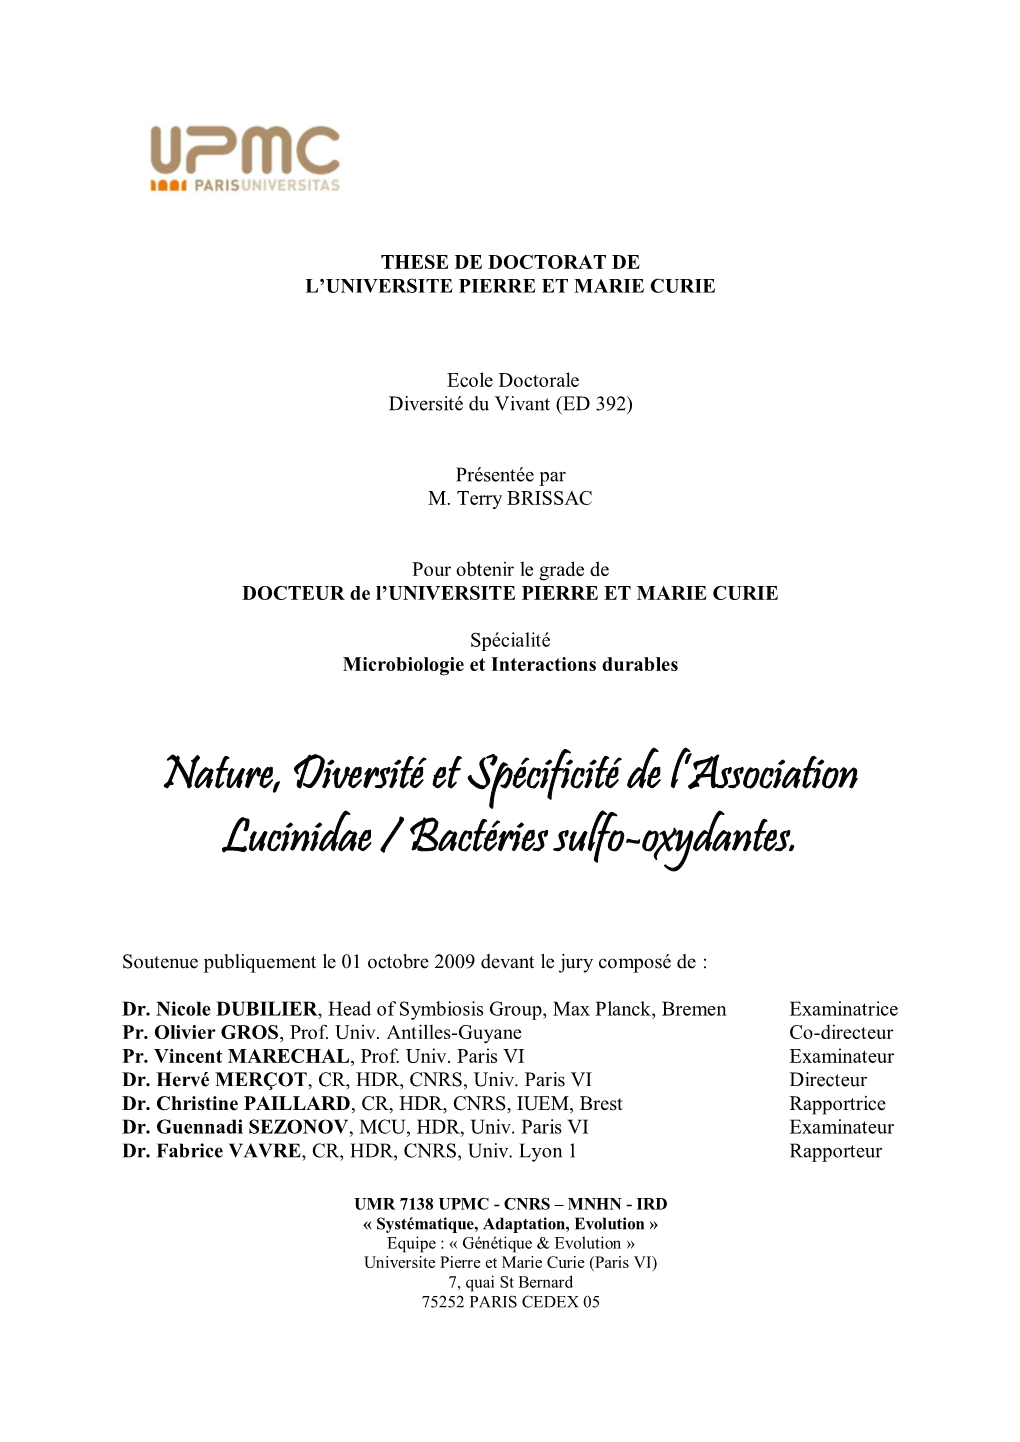 Nature, Diversité Et Spécificité De L'association Lucinidae / Bactéries